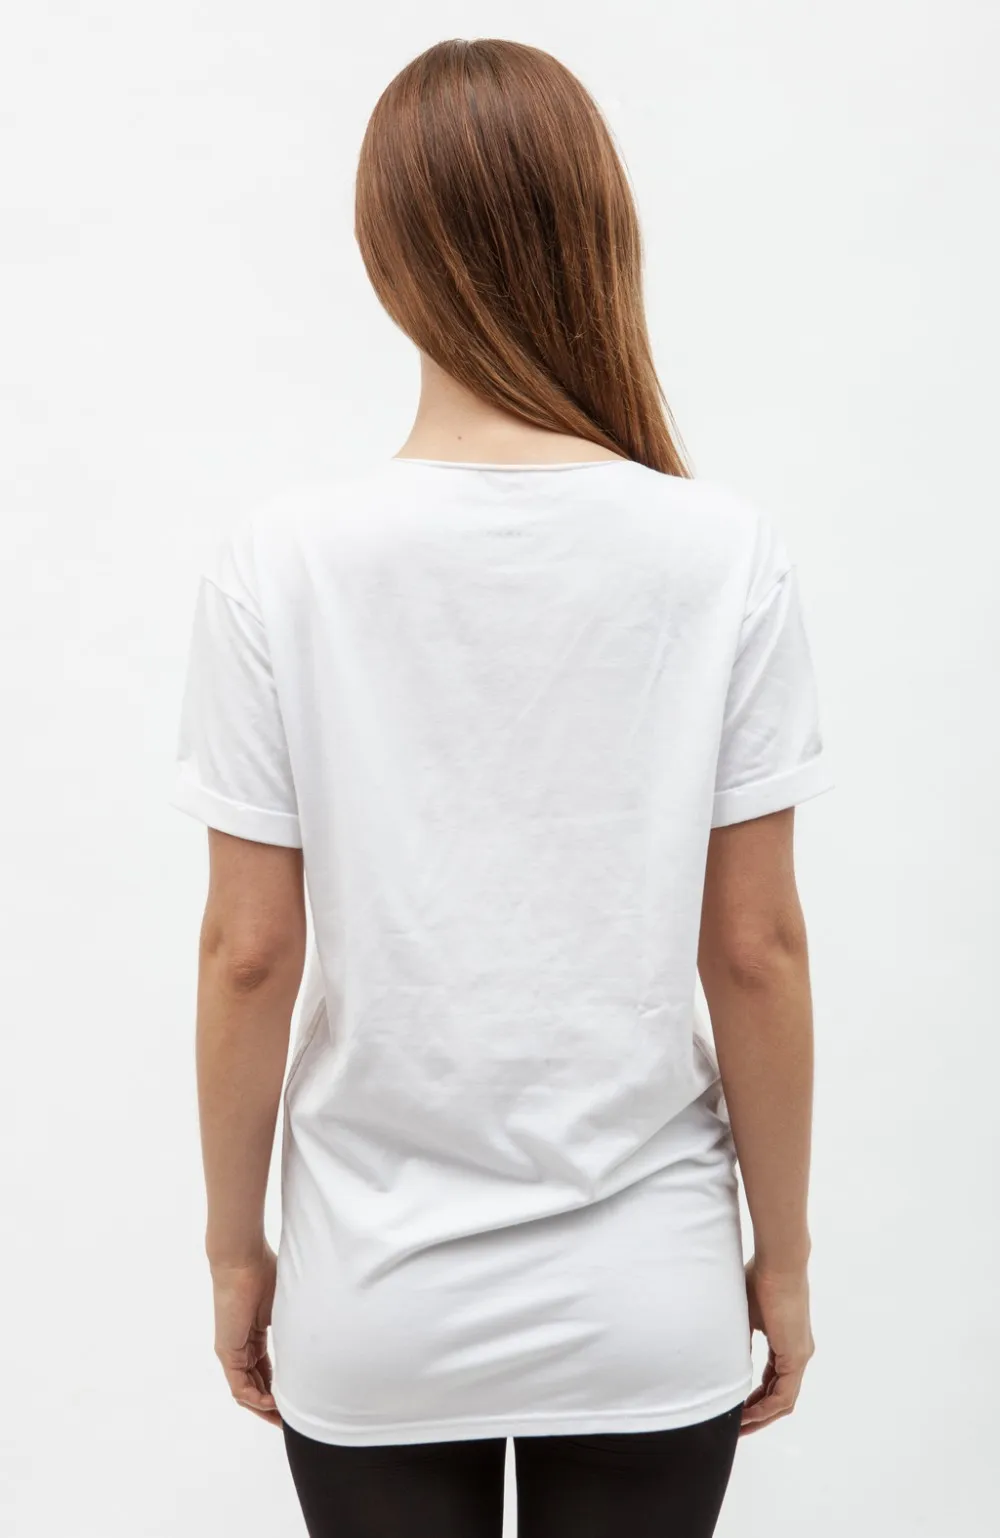 Unisex Tshirt Dri Fit Clothing Loose Plain White T-shirts - Buy Unisex